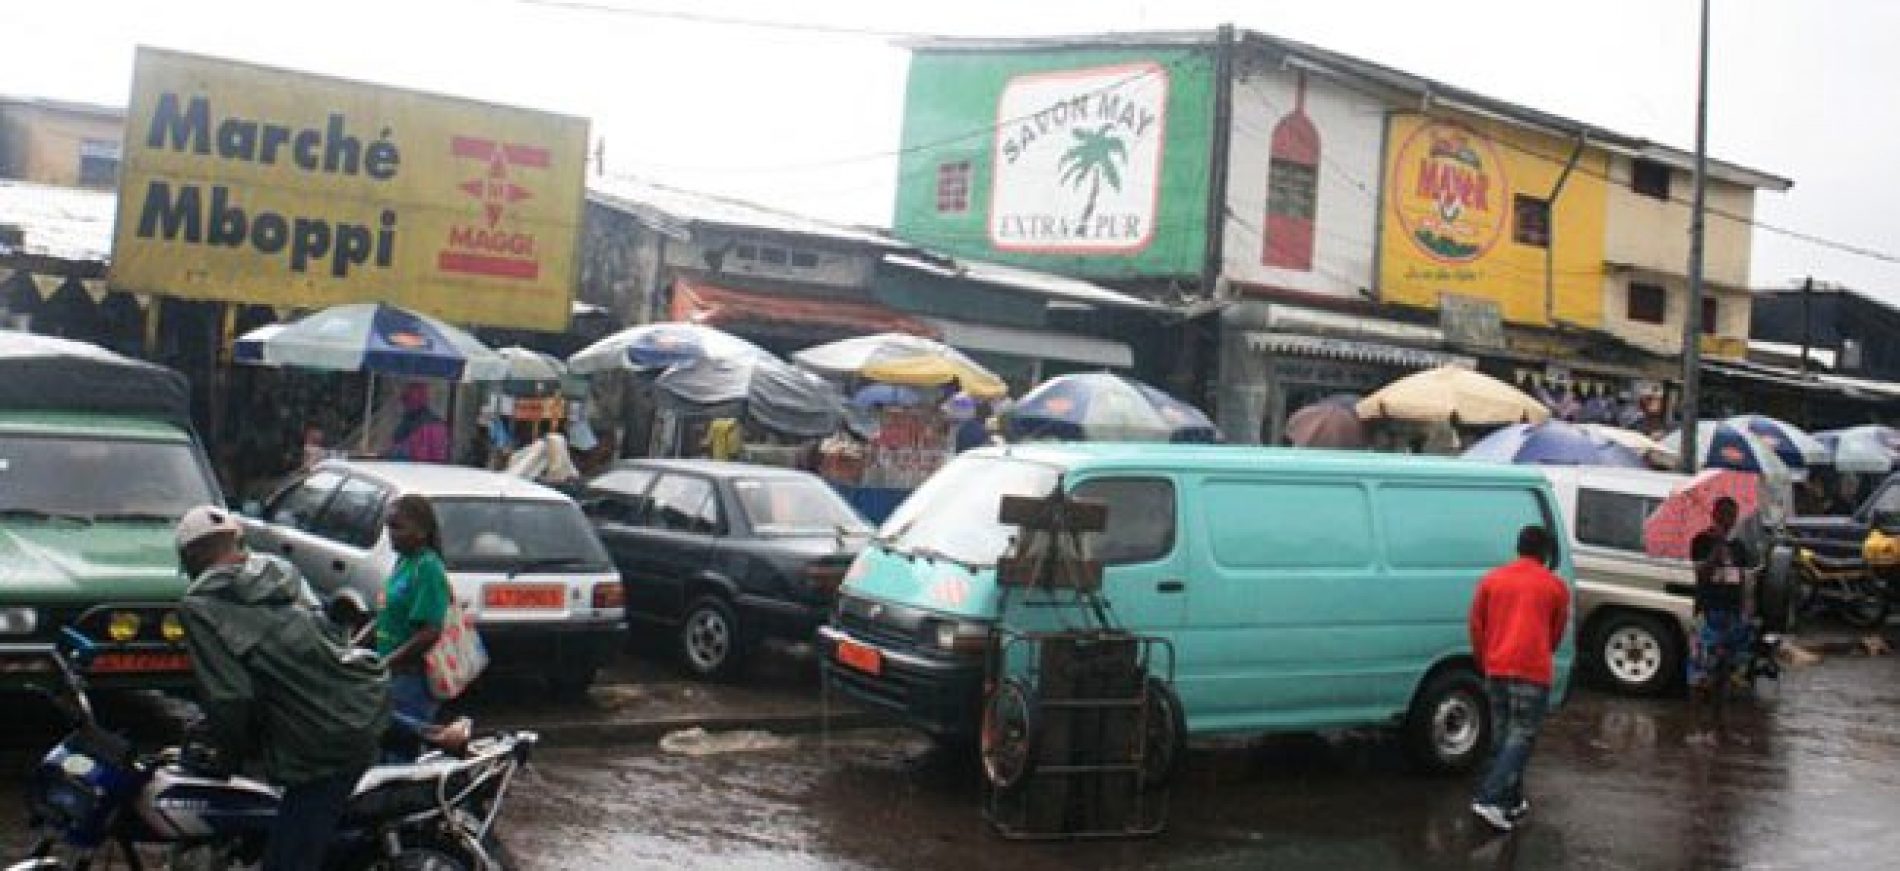 Douala : plus de clarté dans la gestion des marchés